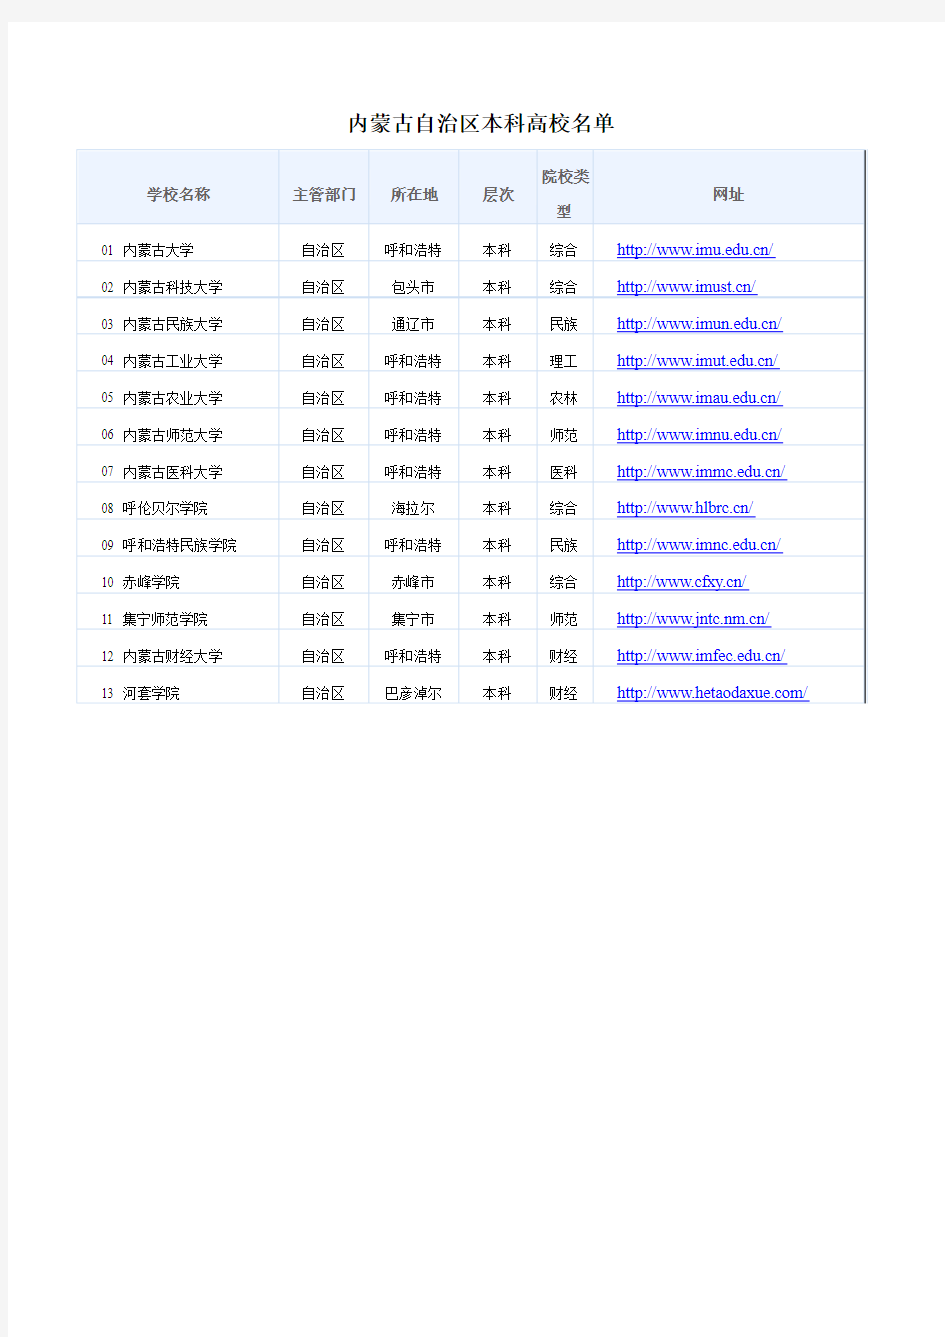 内蒙古自治区本科高校名单